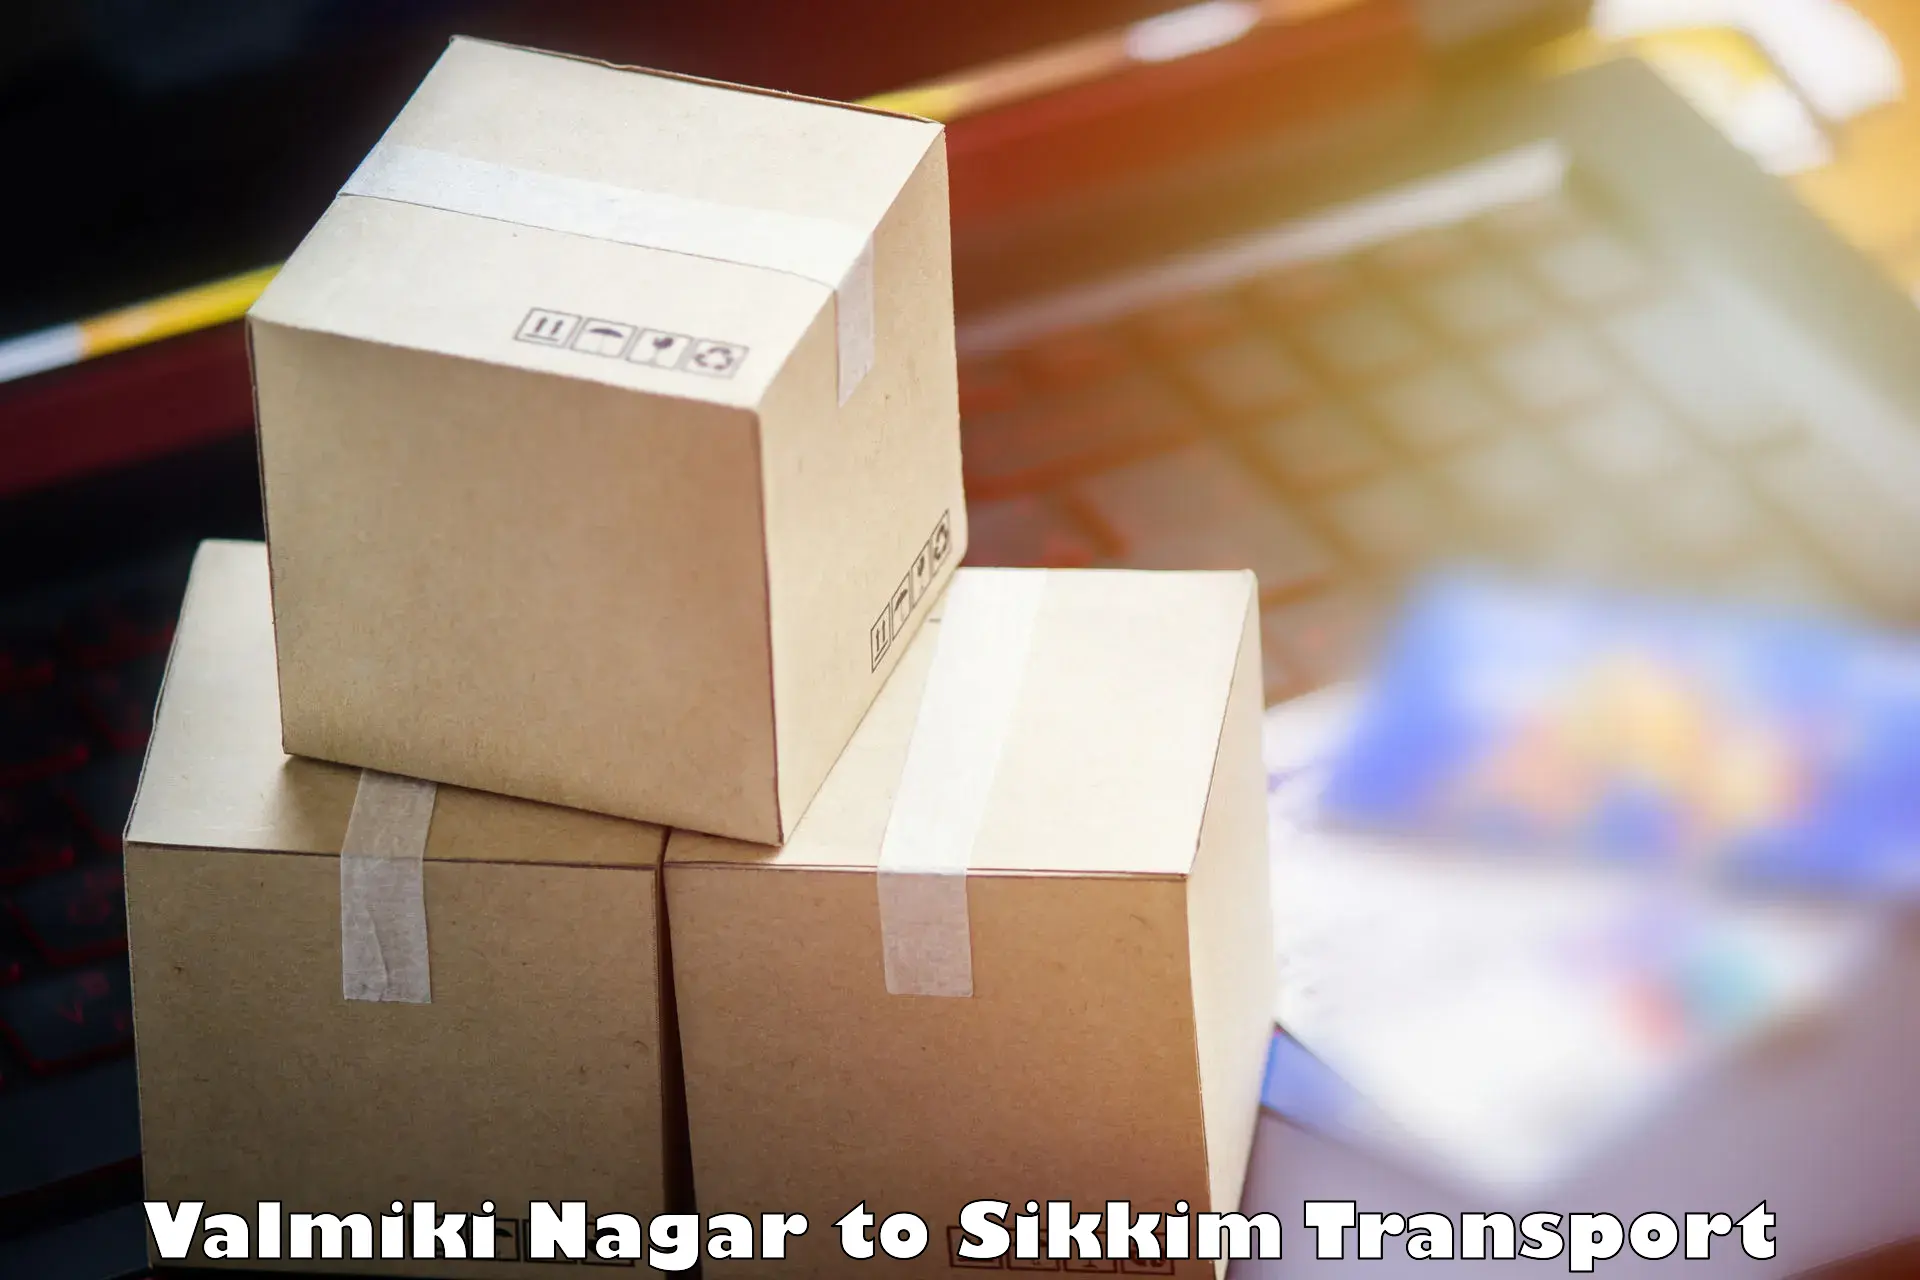 Nearest transport service in Valmiki Nagar to Sikkim